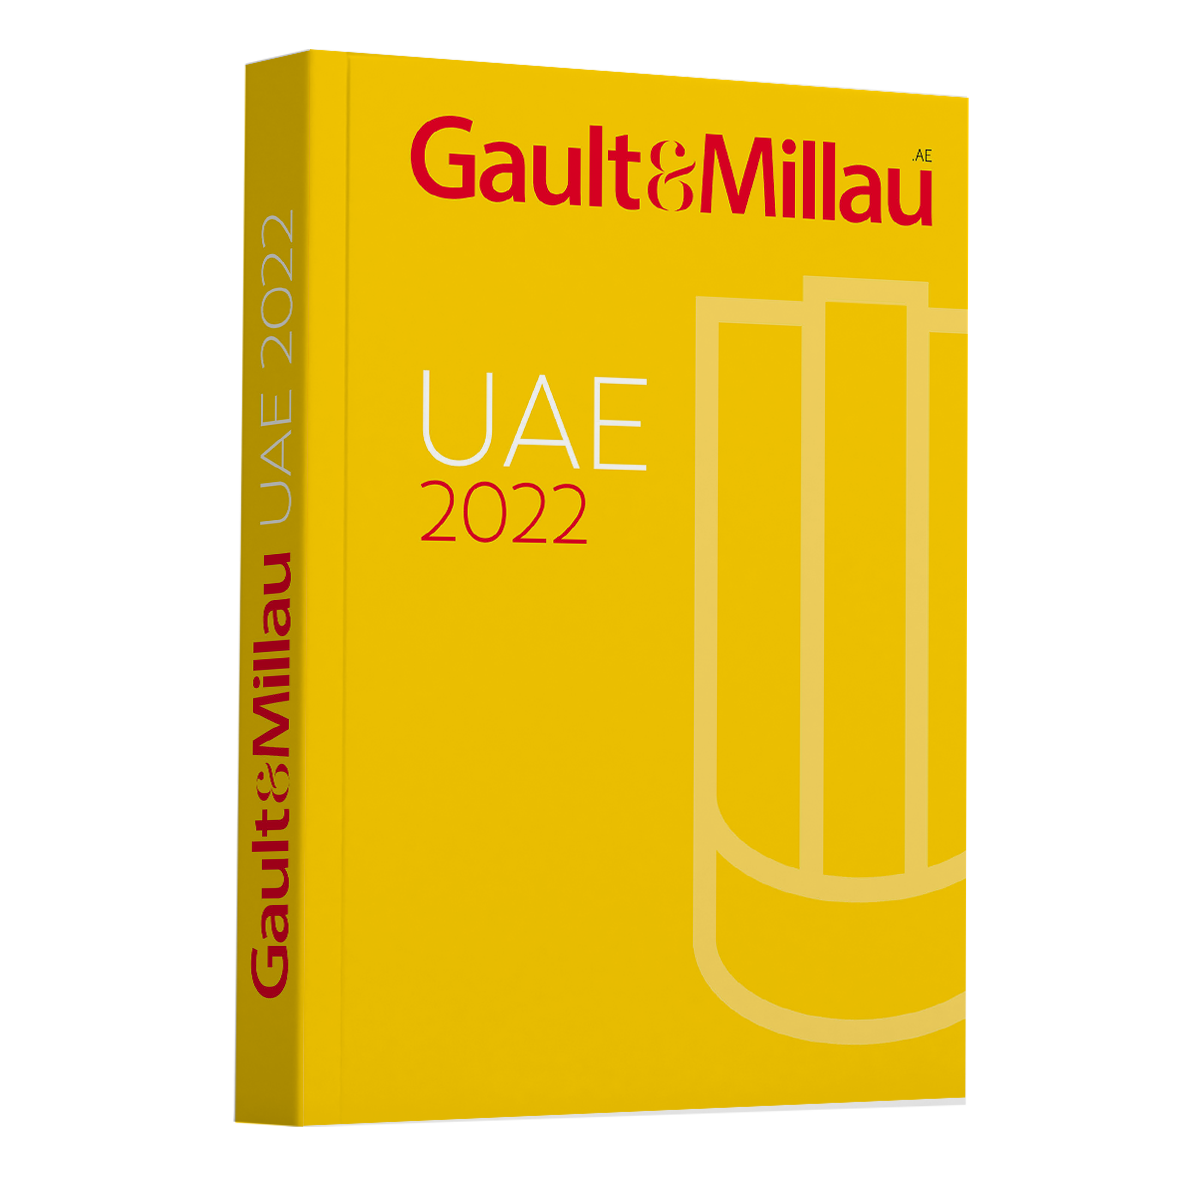 Gault&Millau UAE Guide 2022 - Gault & Millau UAE